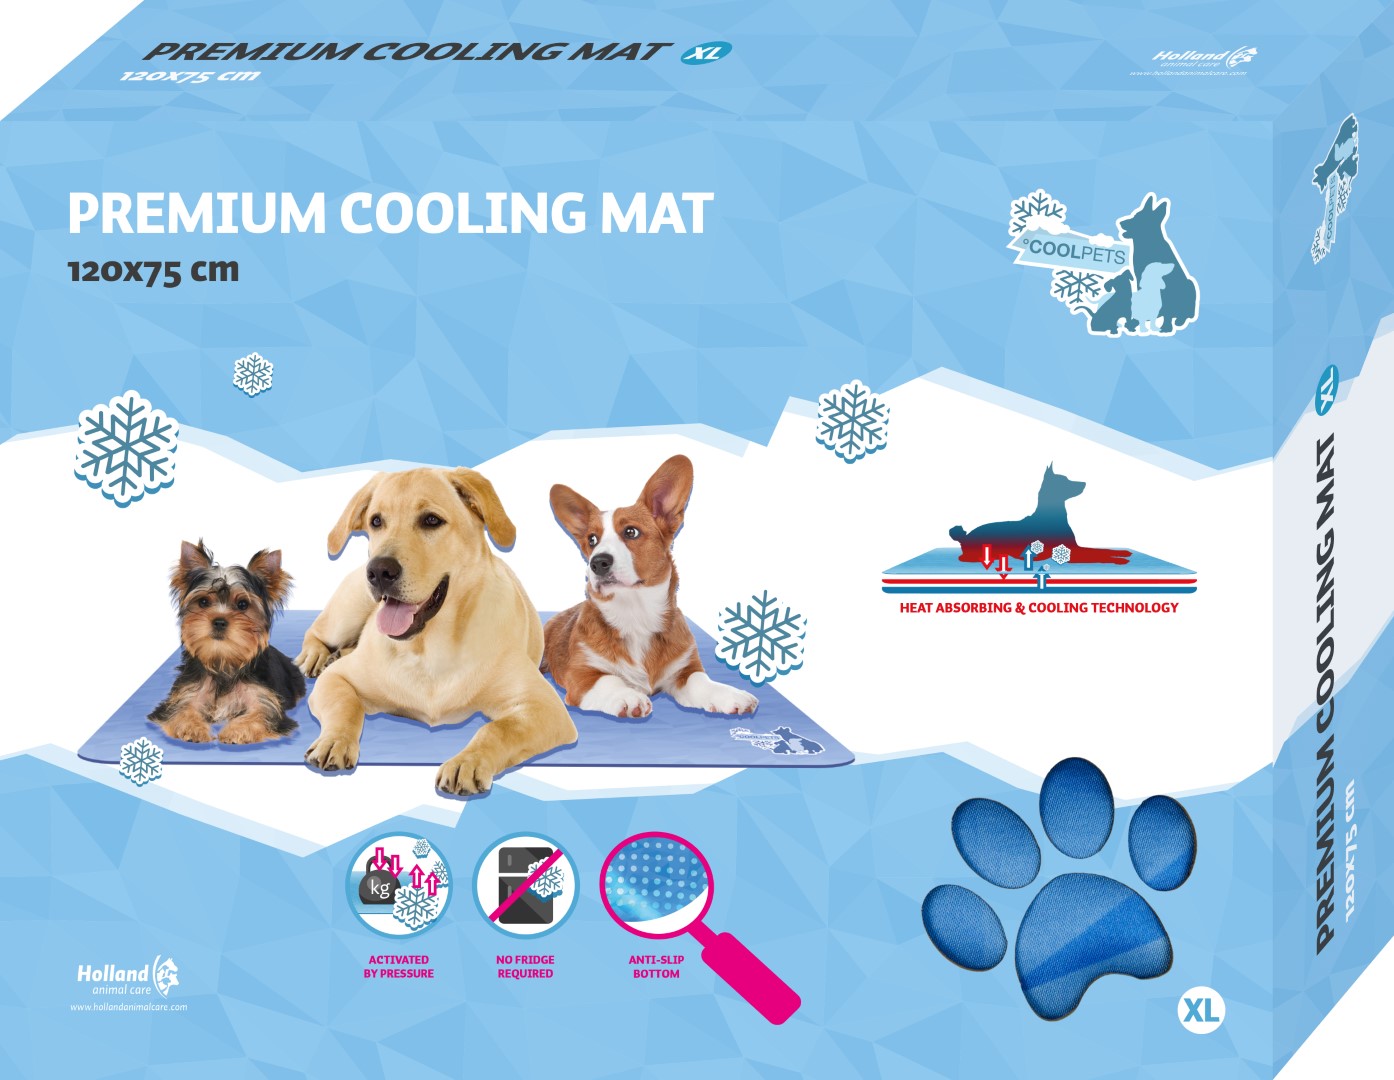 Afbeelding CoolPets Premium Cooling Mat - XL door K-9 Security dogs